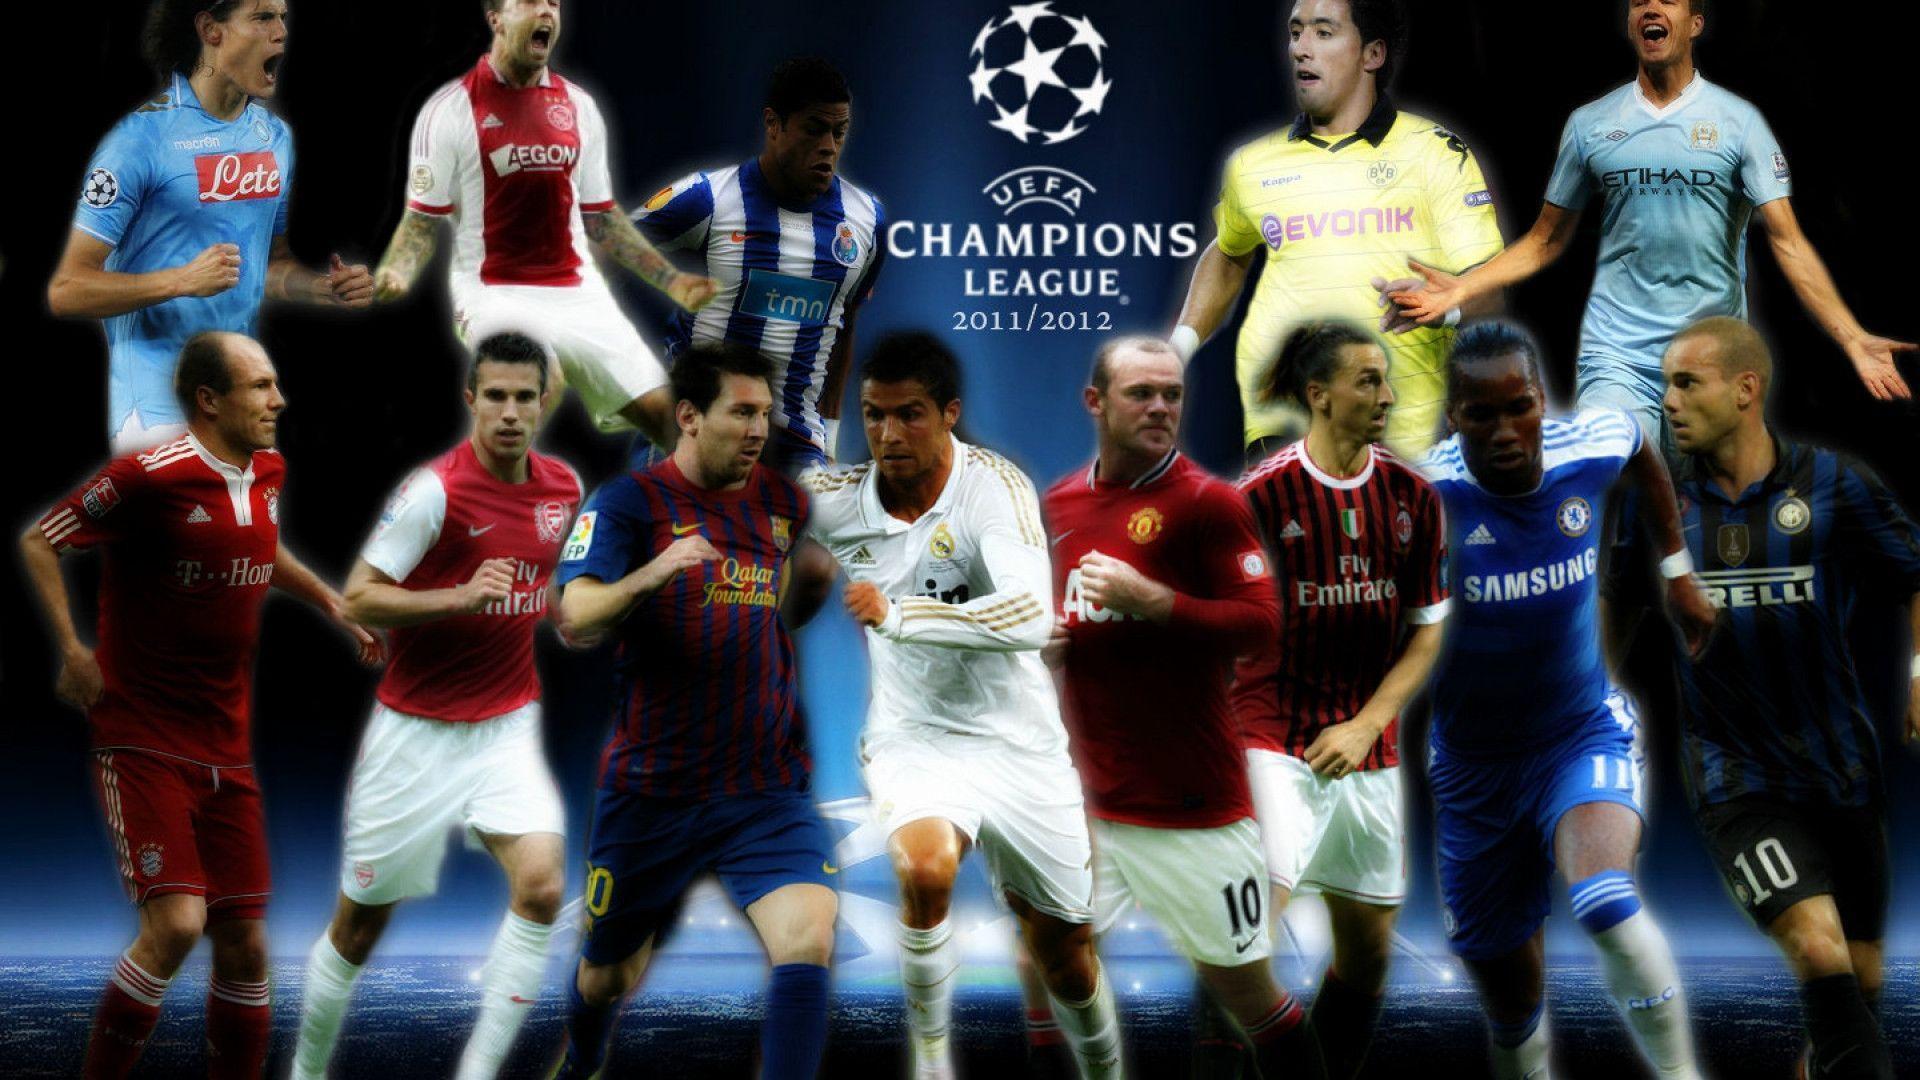 Europe – UEFA Champions League